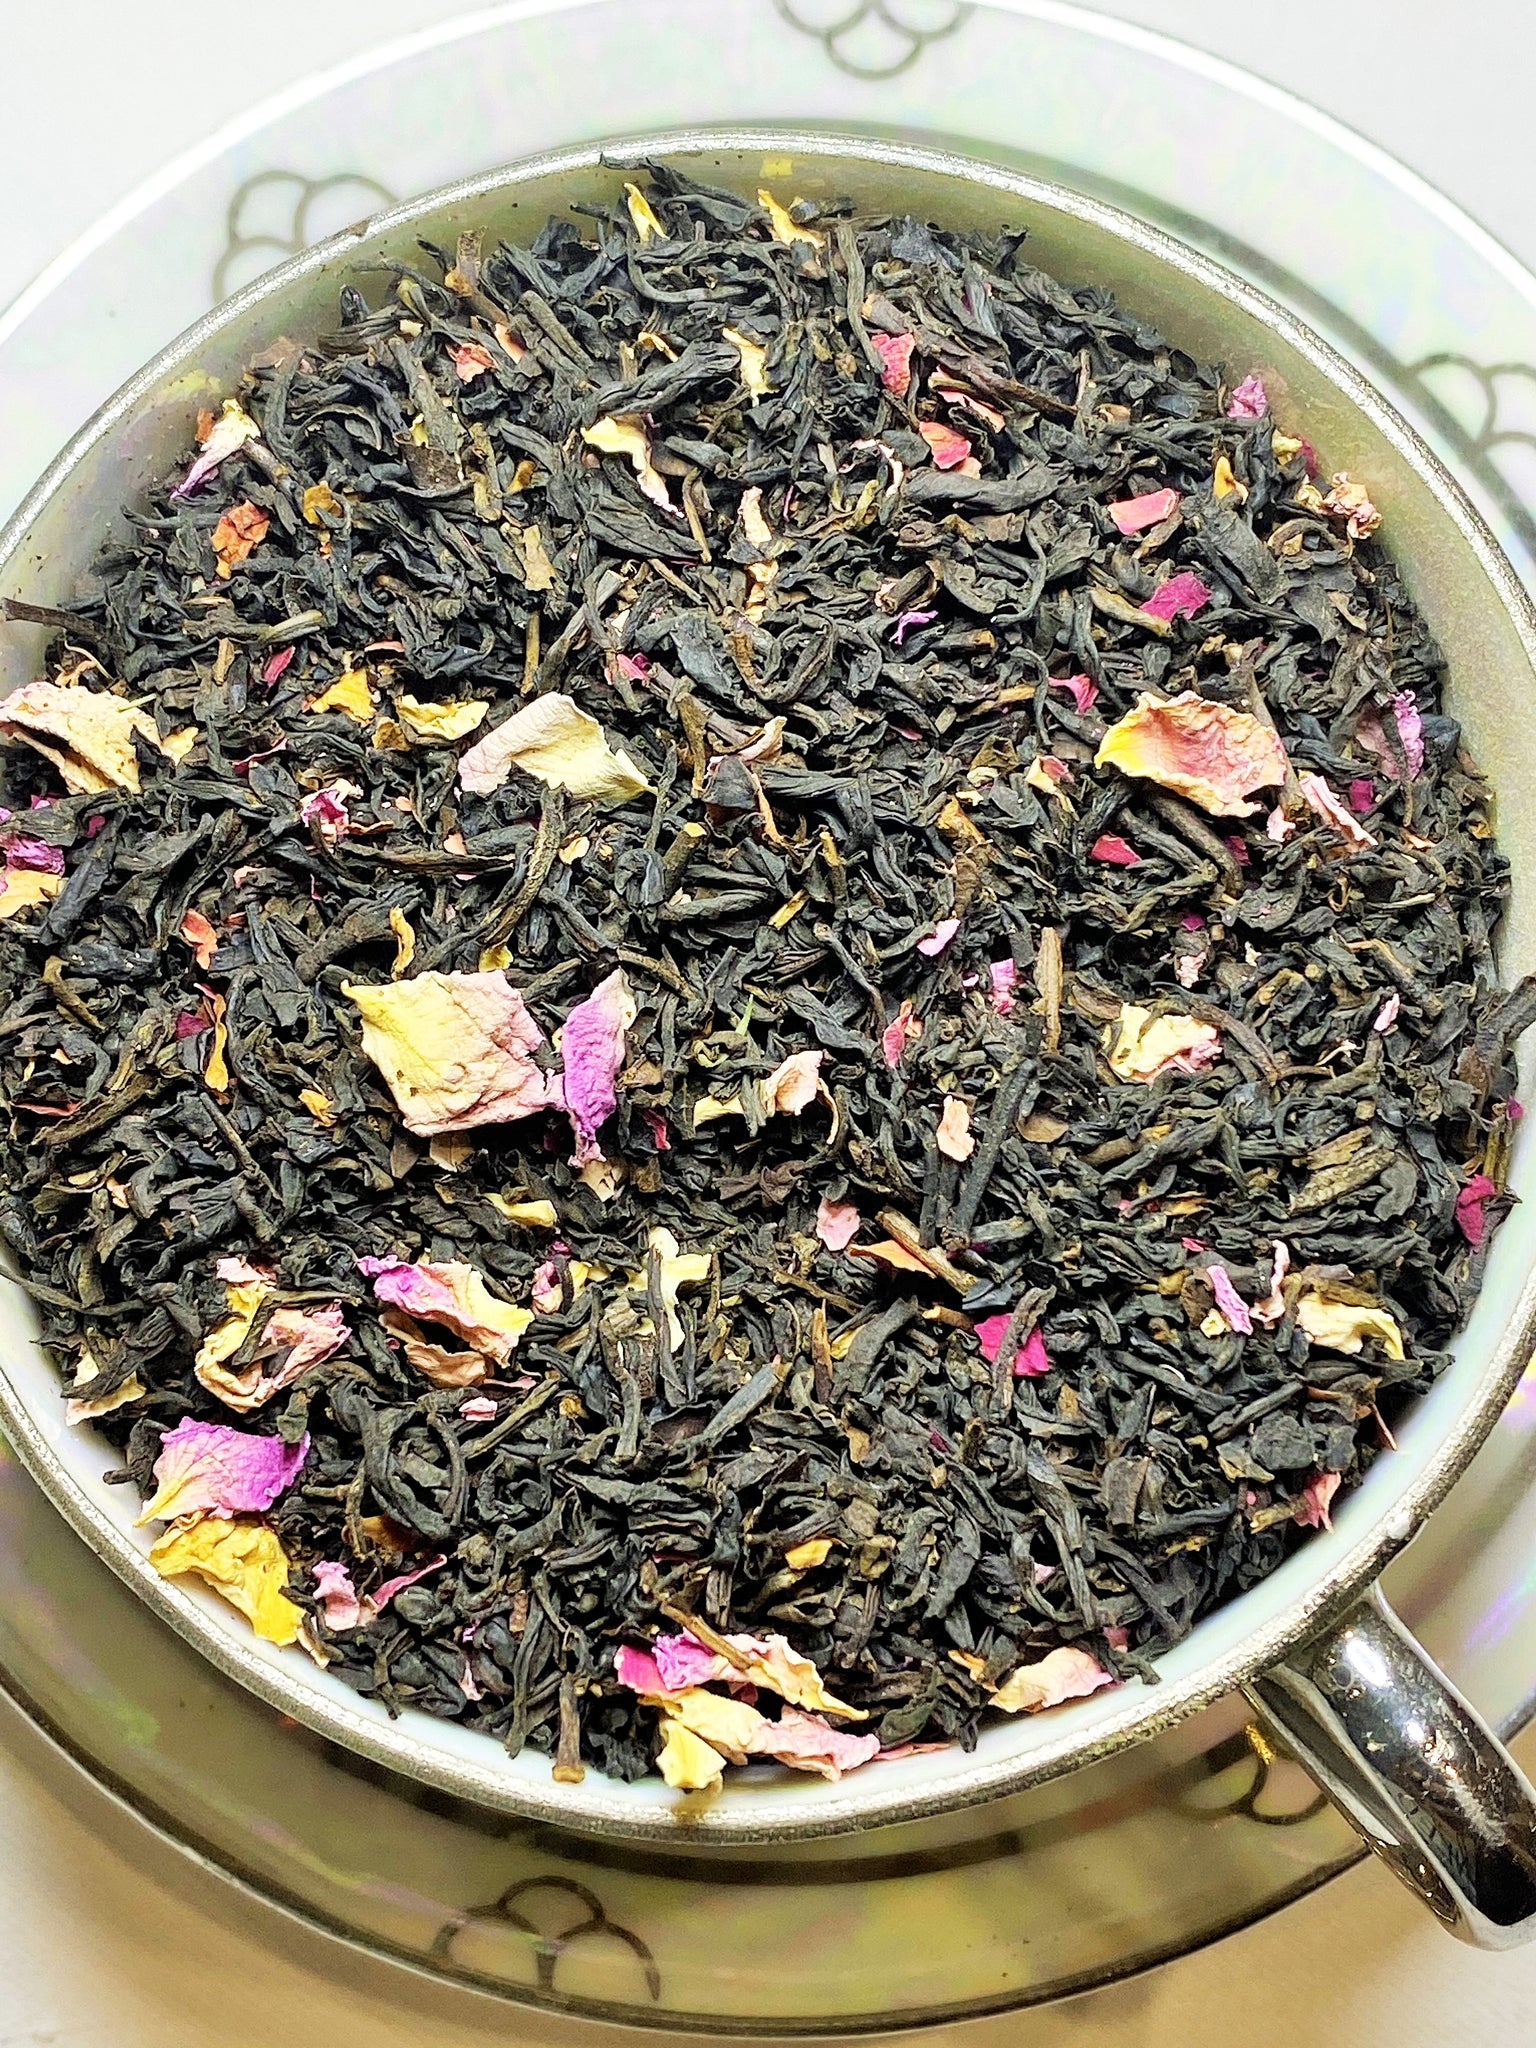 Lady Broom's Rose Tea